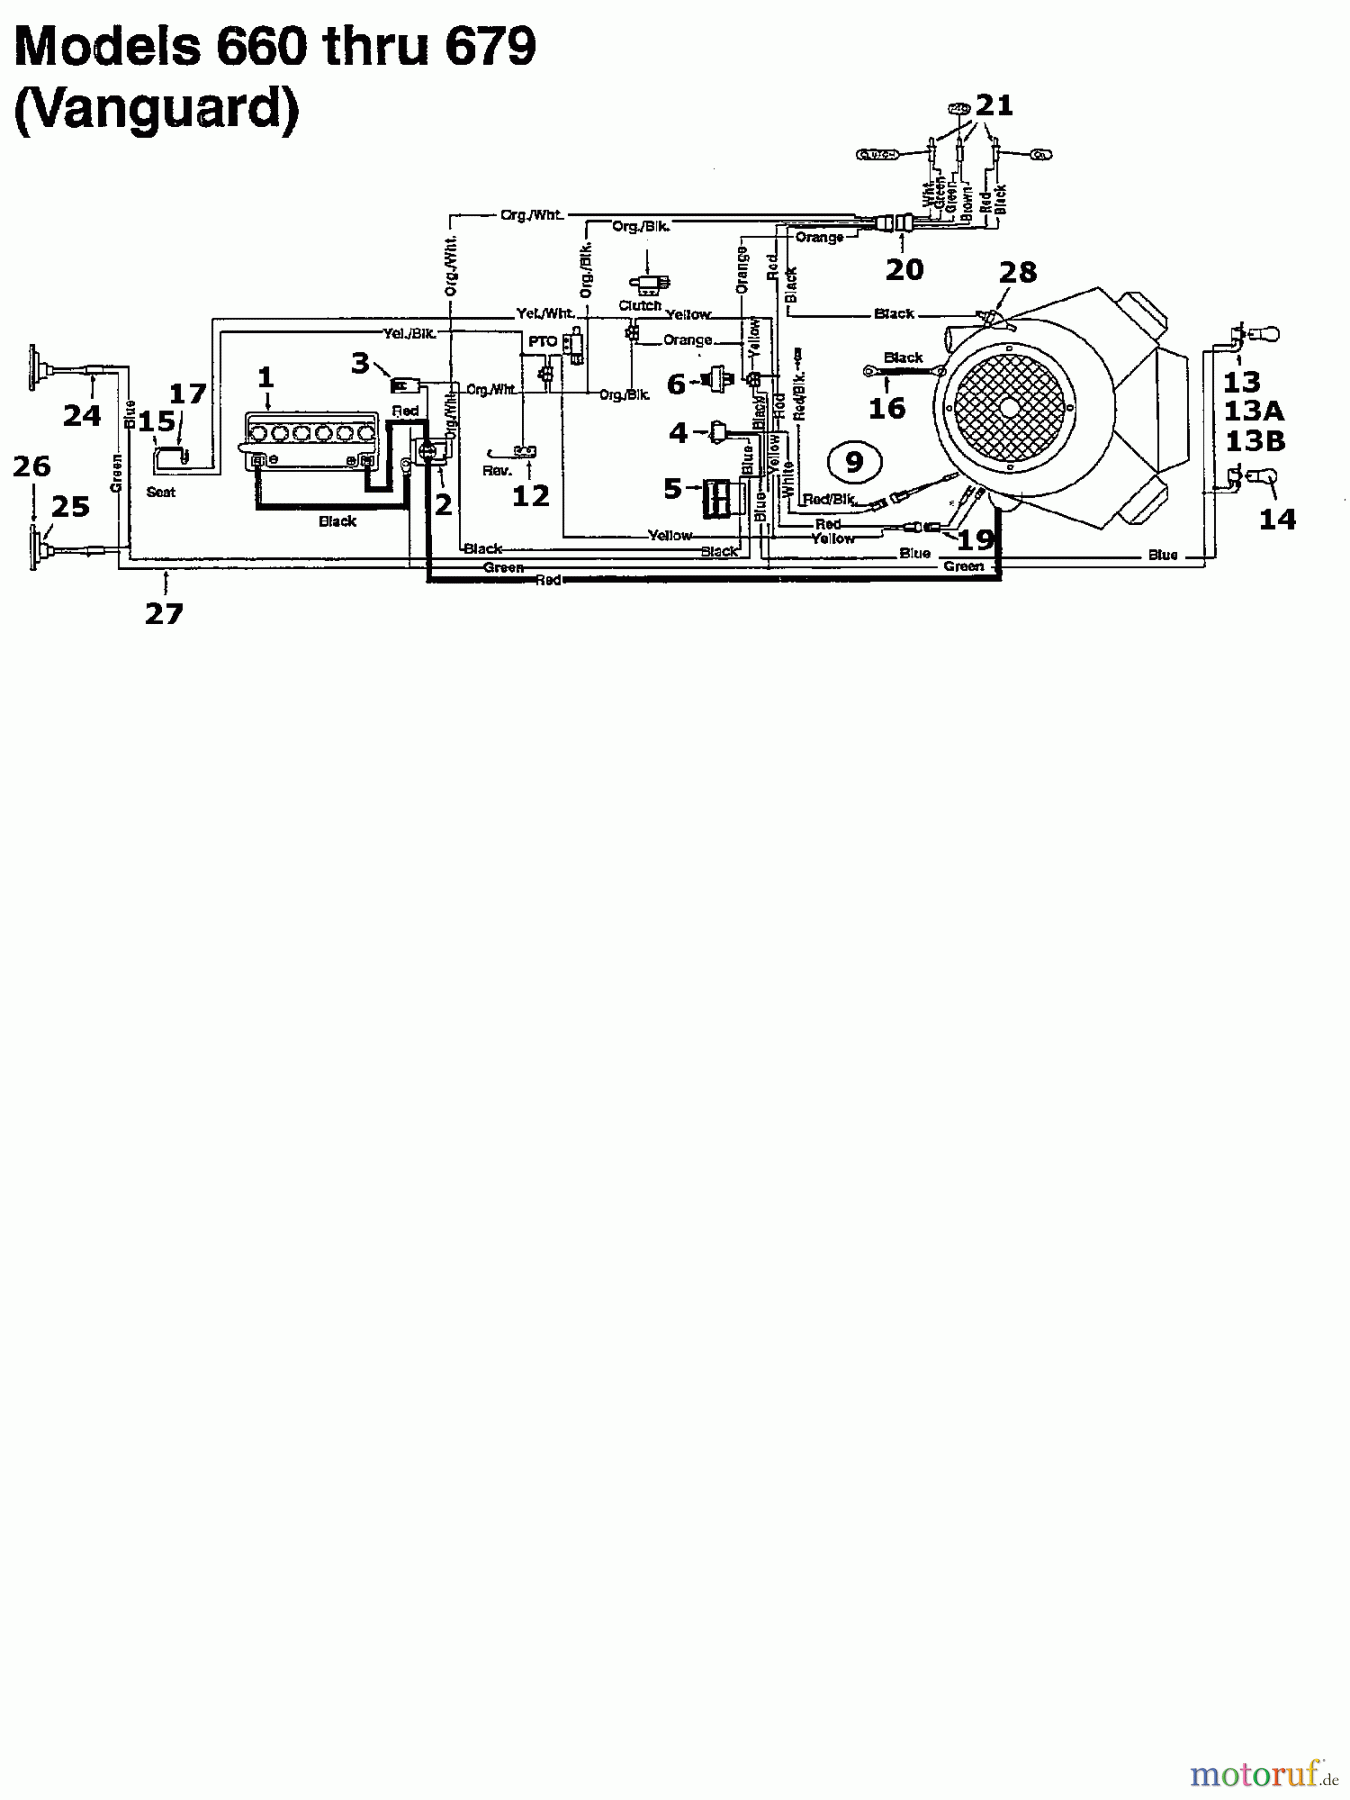  Bauhaus Lawn tractors Funrunner 134K679F646  (1994) Wiring diagram Vanguard